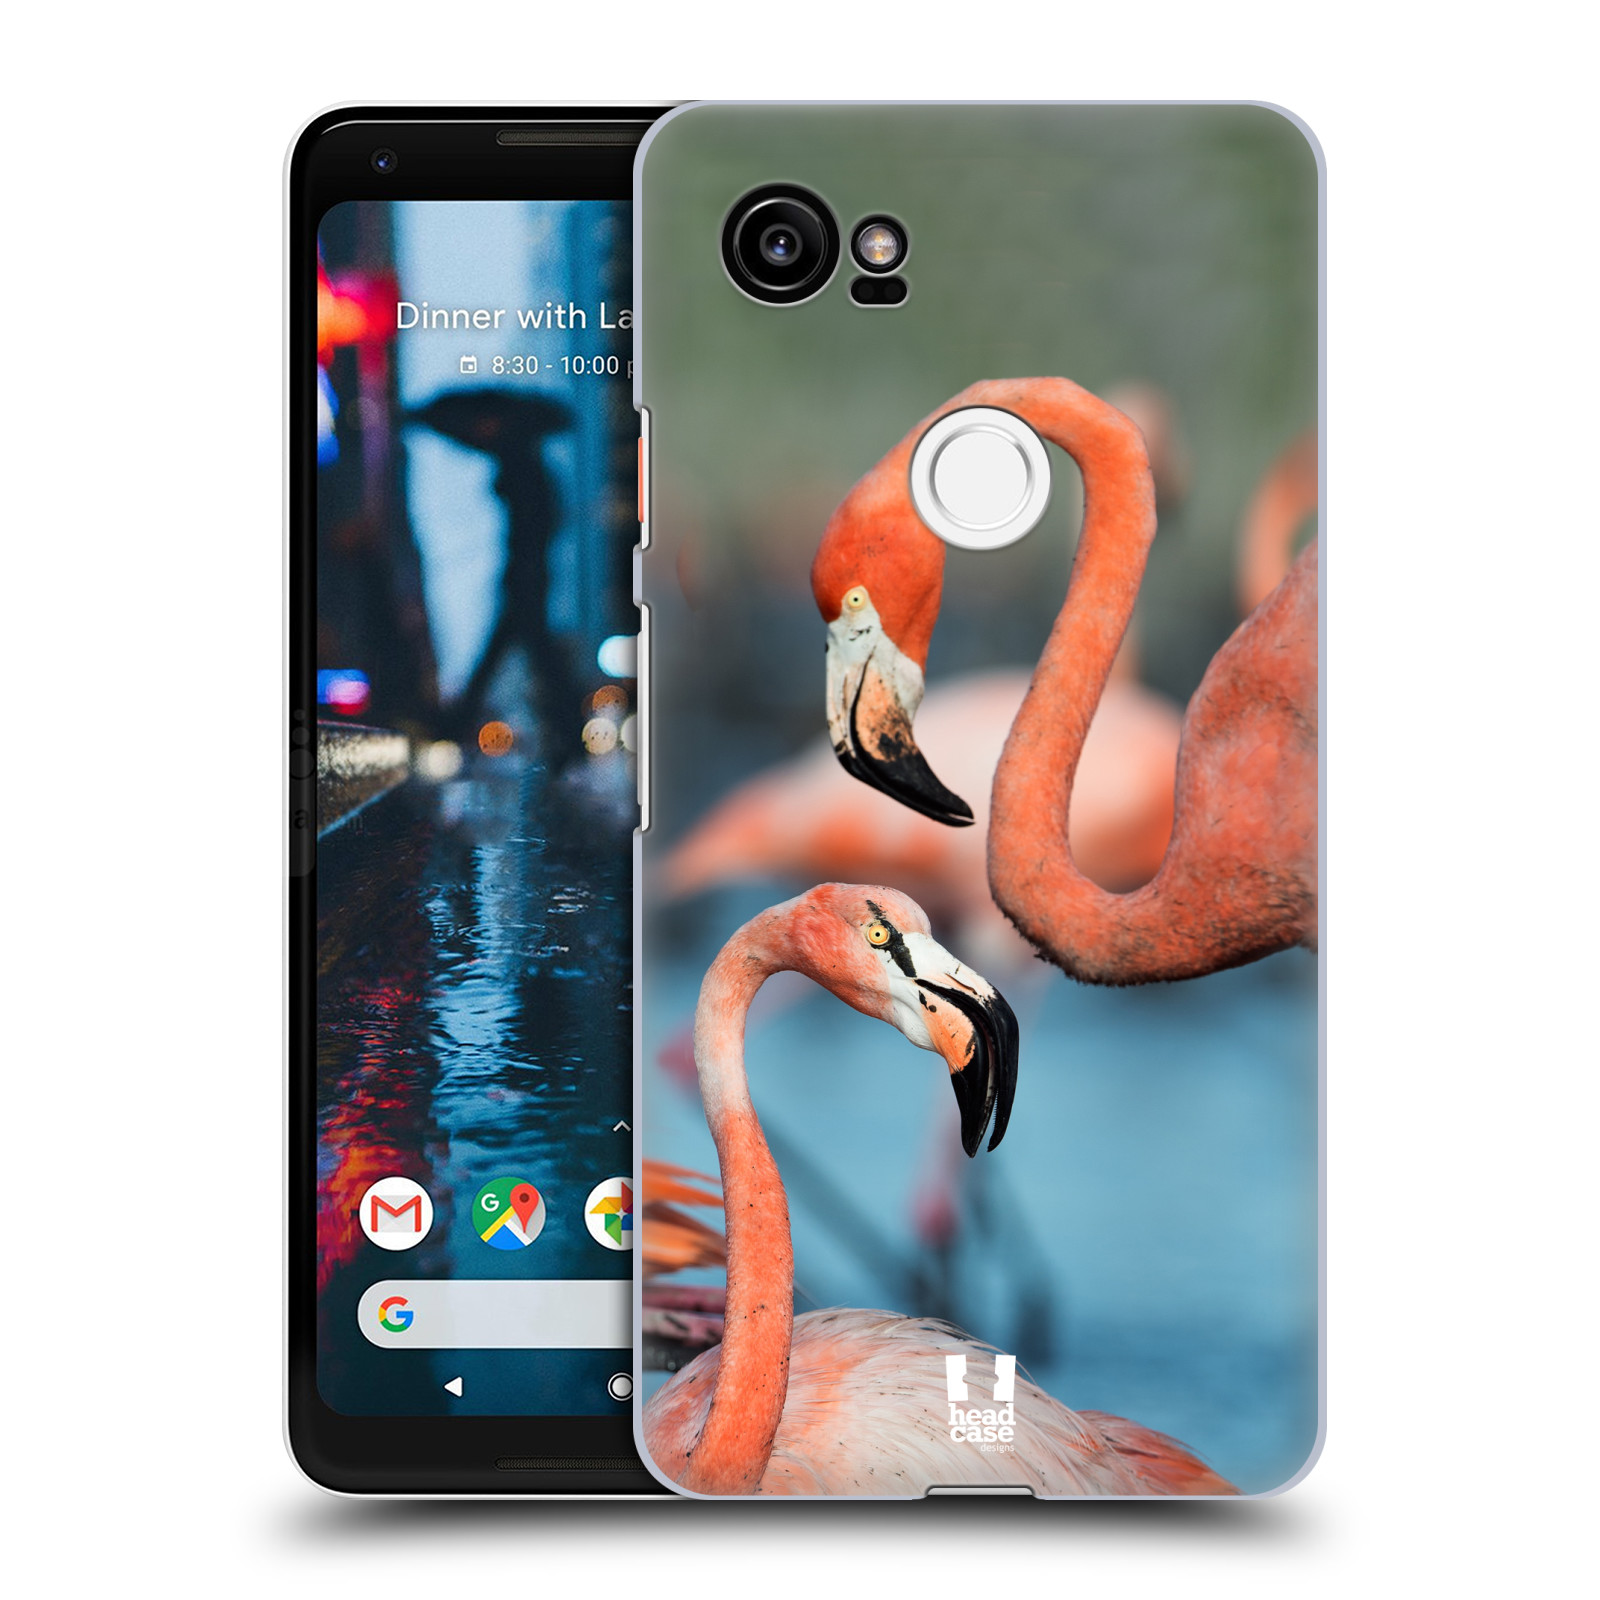  HEAD CASE plastový obal na mobil Google Pixel 2 XL vzor slavná zvířata foto plameňák